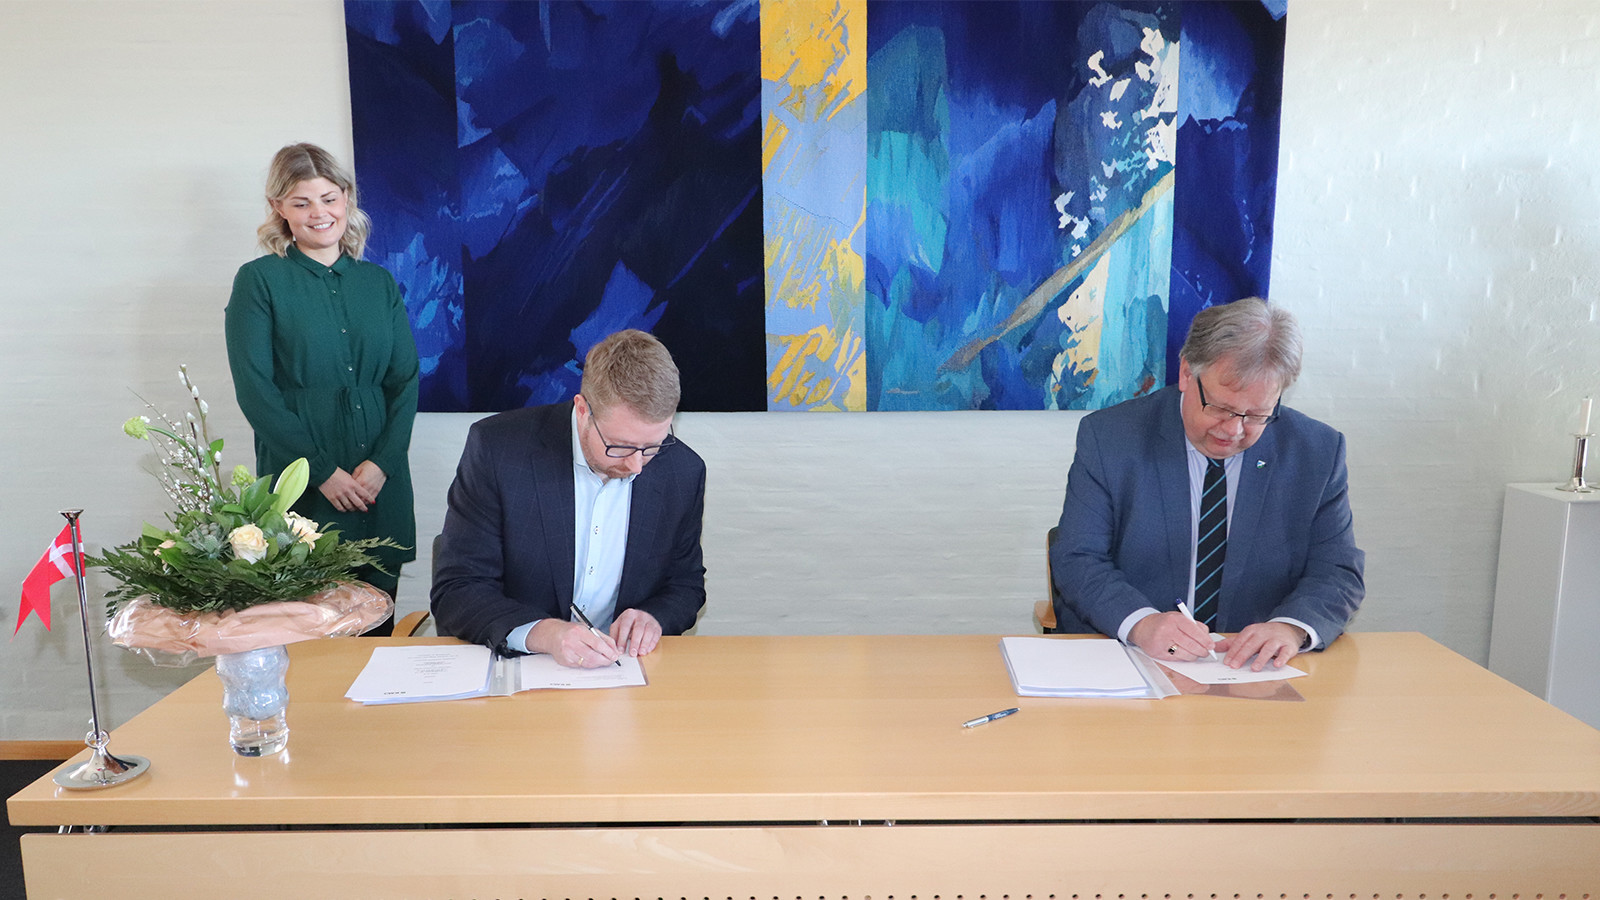 Borgmester af Jammerbugt Kommune (til højre), Mogens Christen Gade, underskriver aftale sammen med anden person